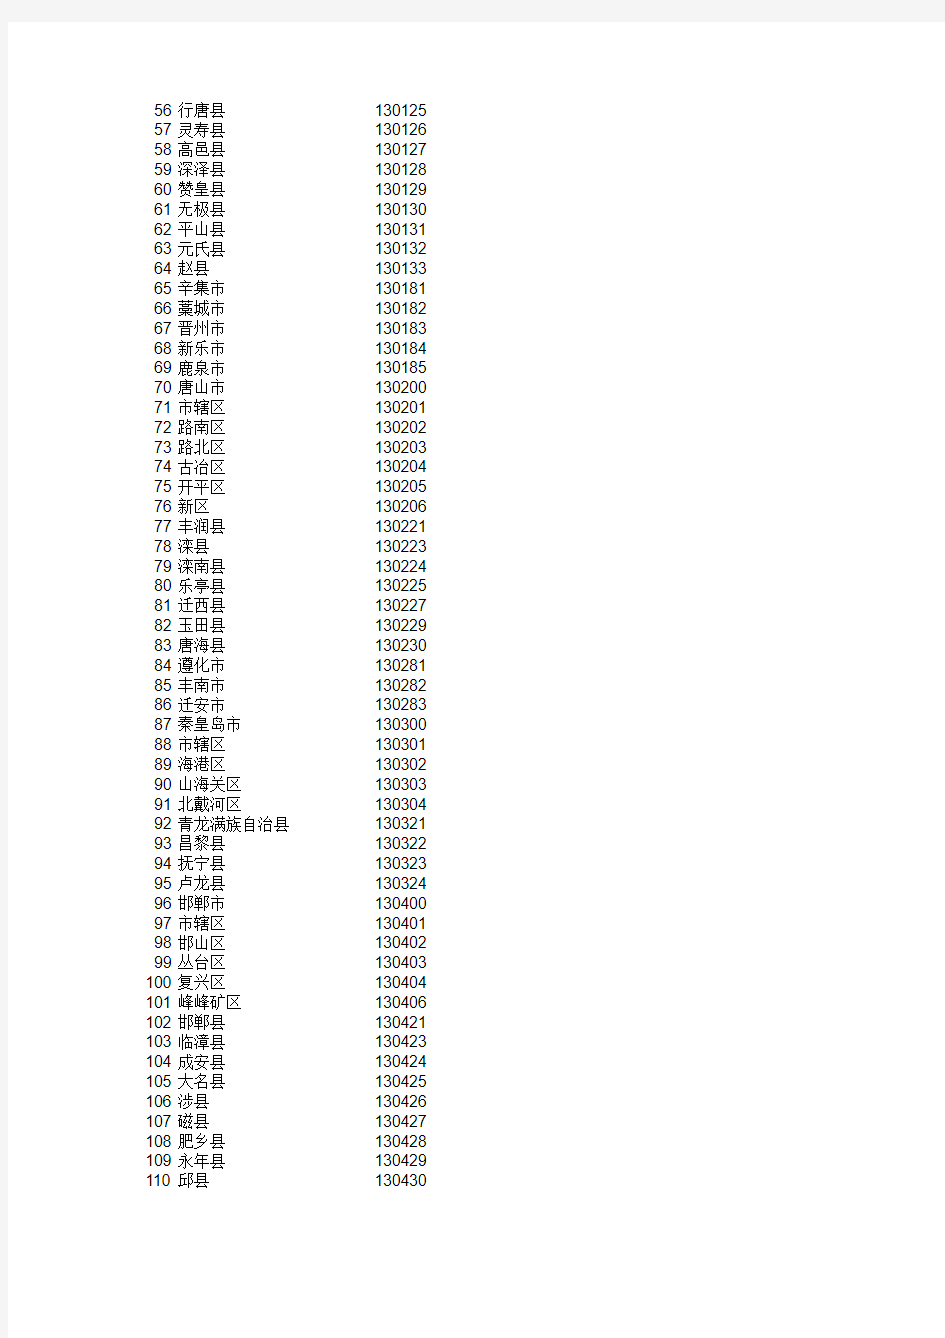 中国地区代码表